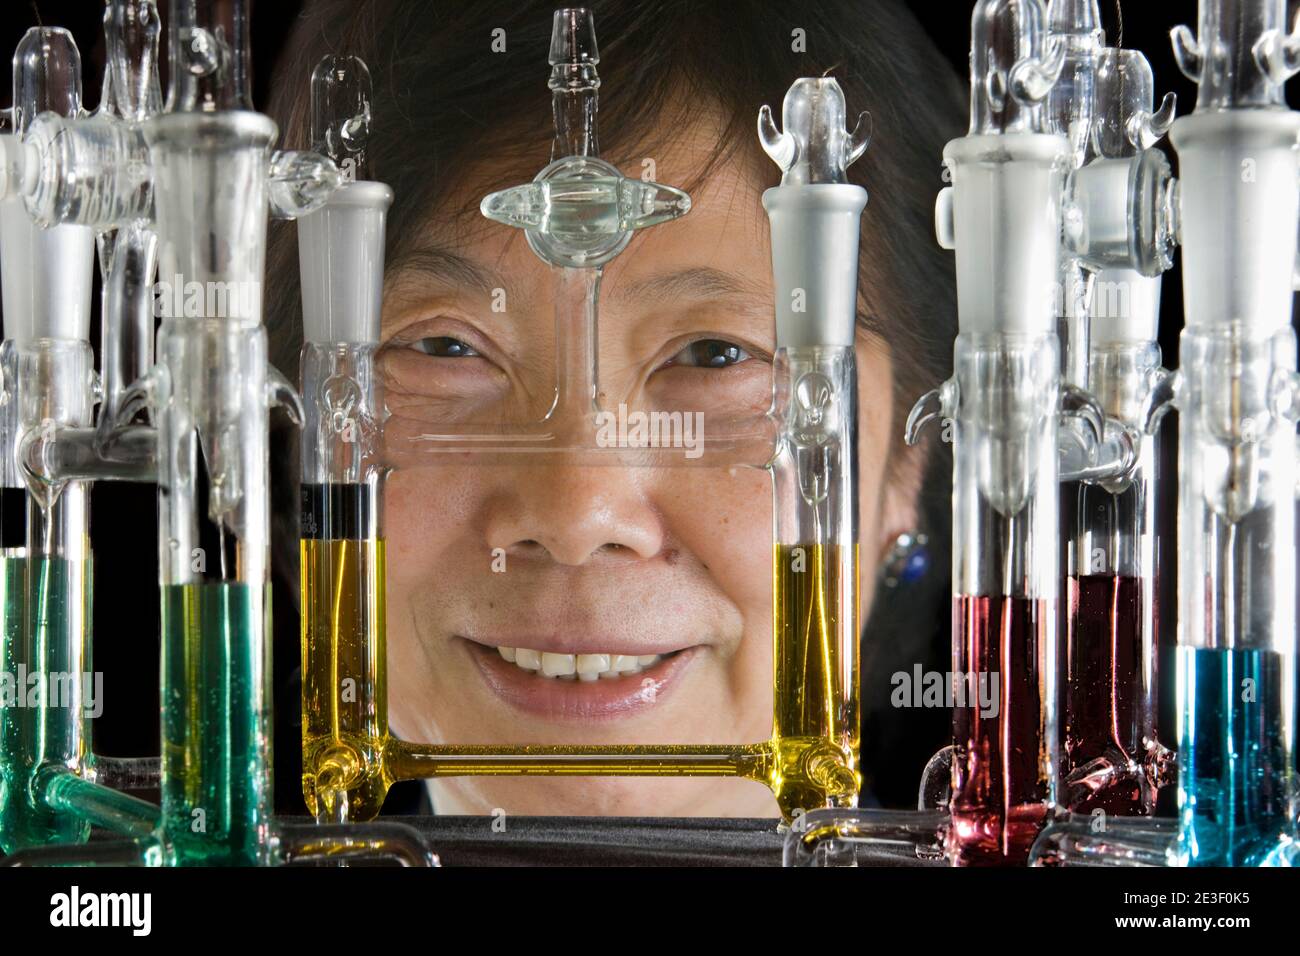 ESCLUSIVA - Pr. Akiko Kobayashi, Giappone, premio 2009, per il premio Women in Science Award, LOREAL-UNESCO, Asia/Pacifico "per il suo lavoro sui metalli organici che potrebbe aprire nuove possibilità nei dispositivi elettronici". Le cellule di tipo H con due elettrodi di platino per l'elettrocristallizzazione, che vengono utilizzate per la crescita di cristalli molecolari conduttivi a Tokyo, Giappone, il 11 dicembre 2008. Foto di Micheline Pelletier/ABACAPRESS.COM Foto Stock